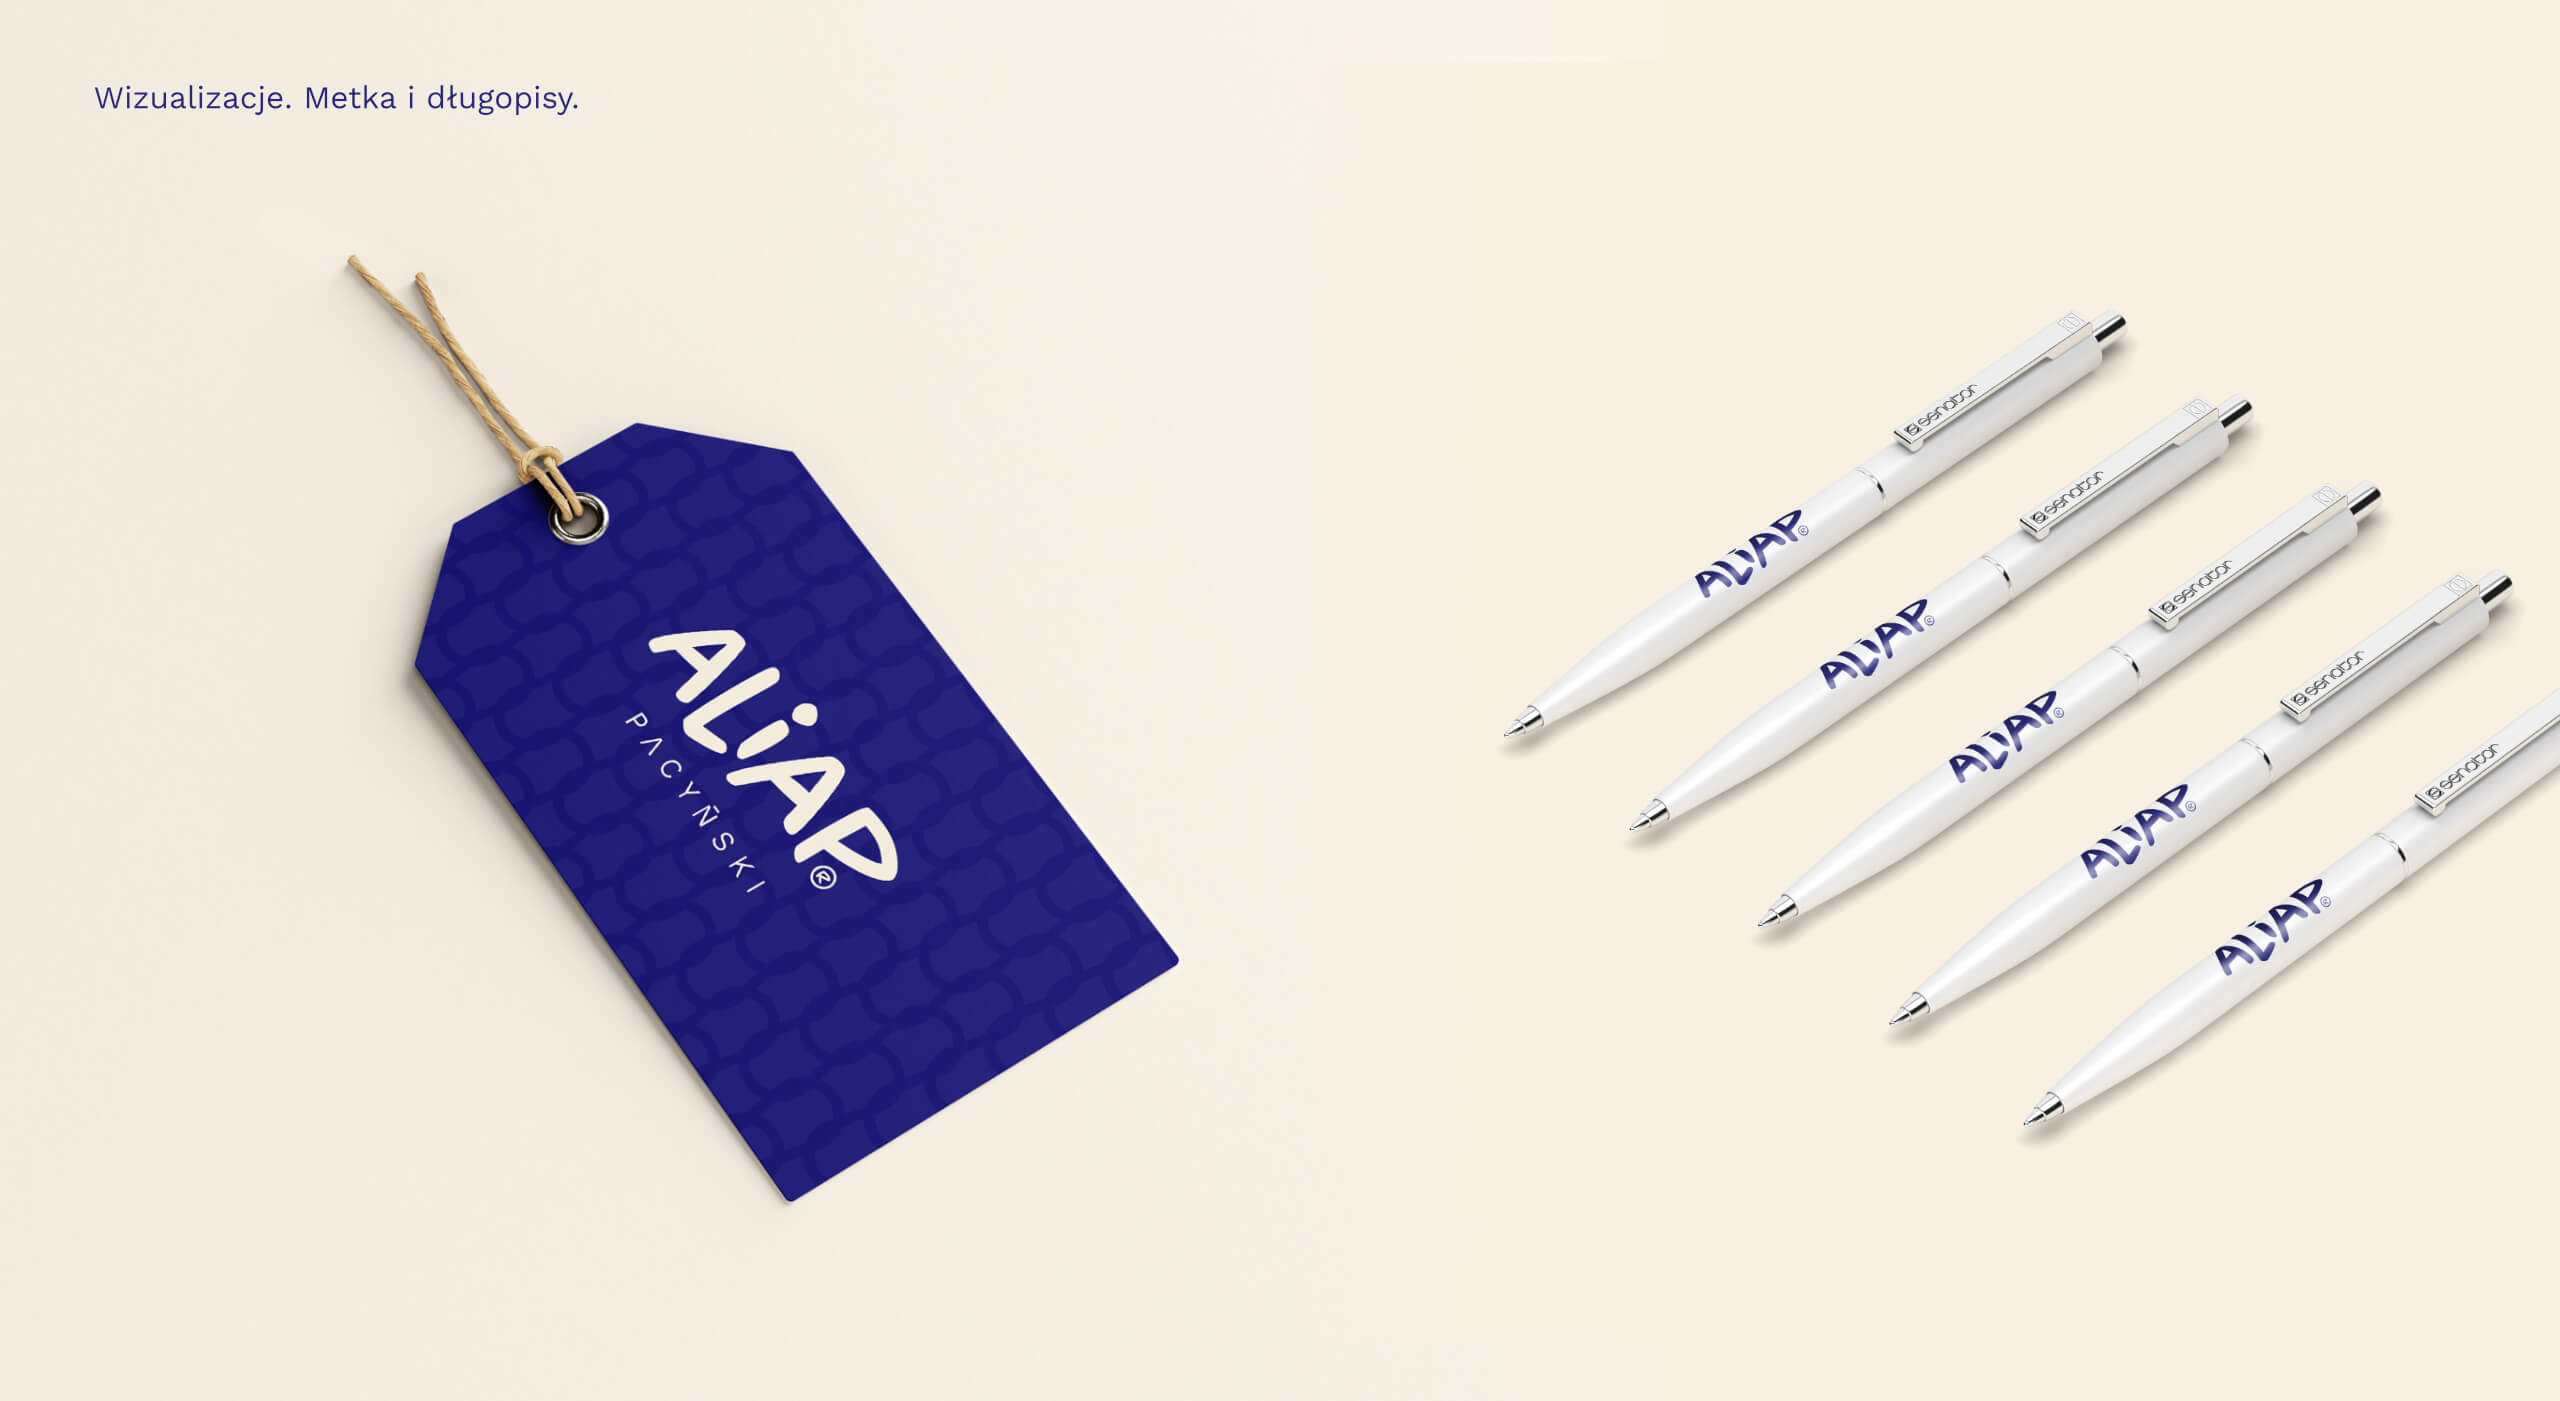 Aliap - Projekt metek do ubrań oraz długopisów